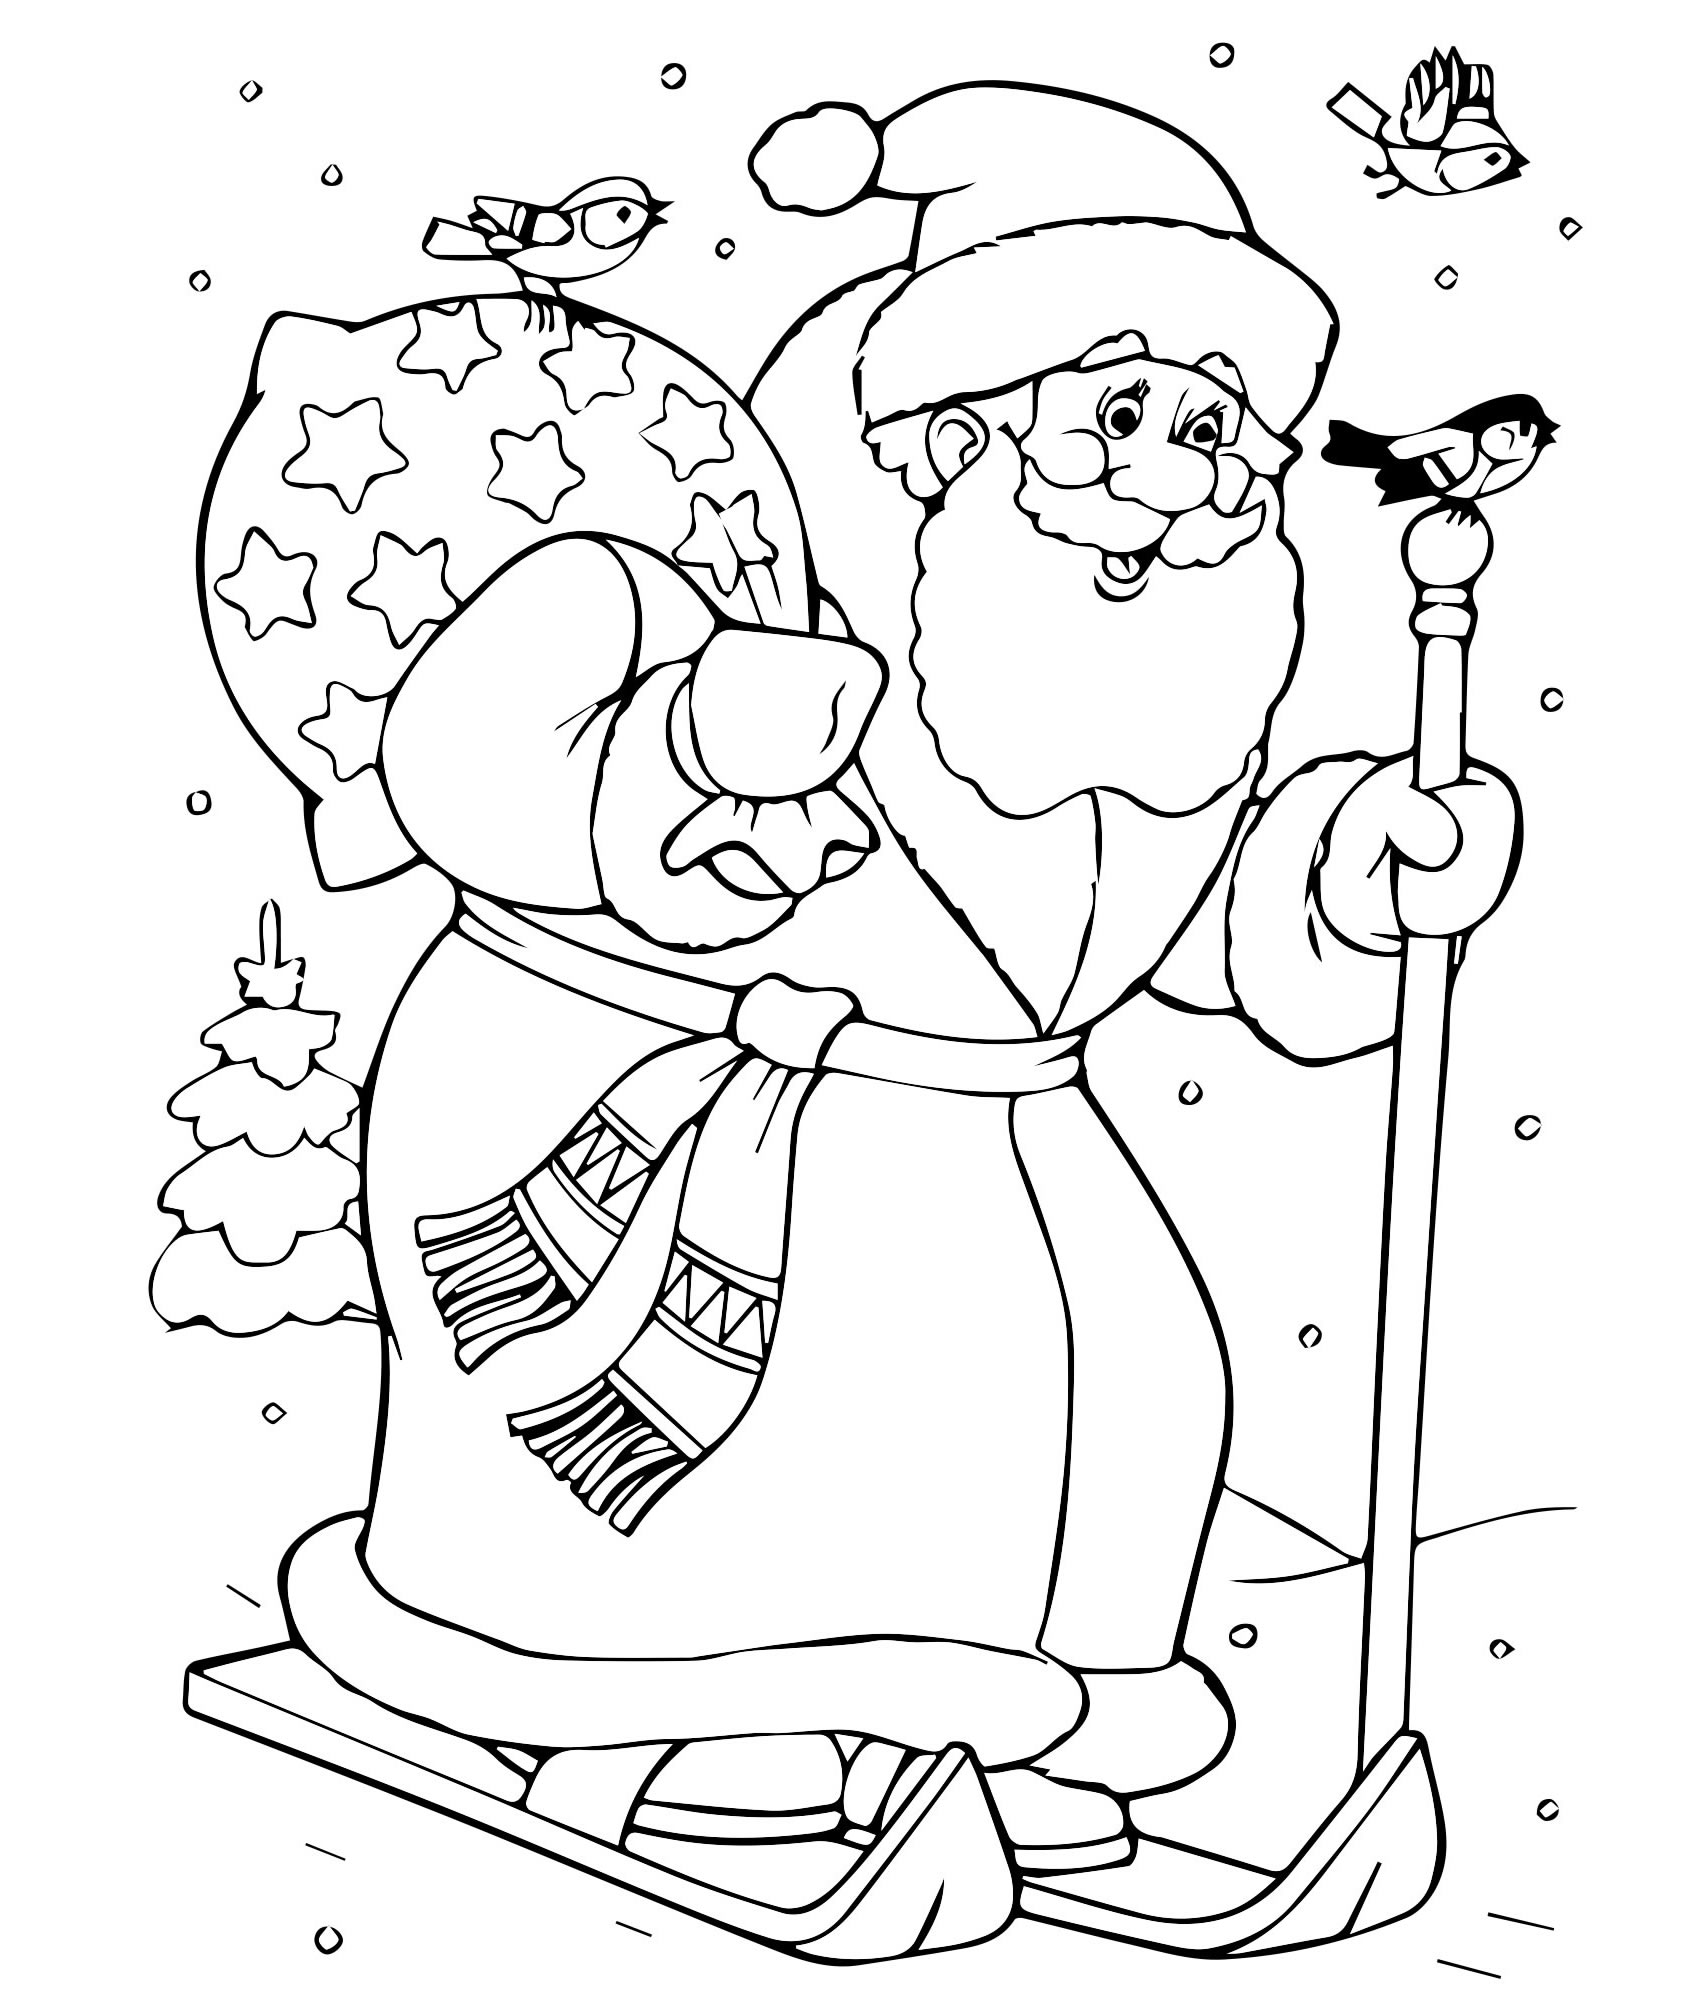 Coloring page dazzling santa claus